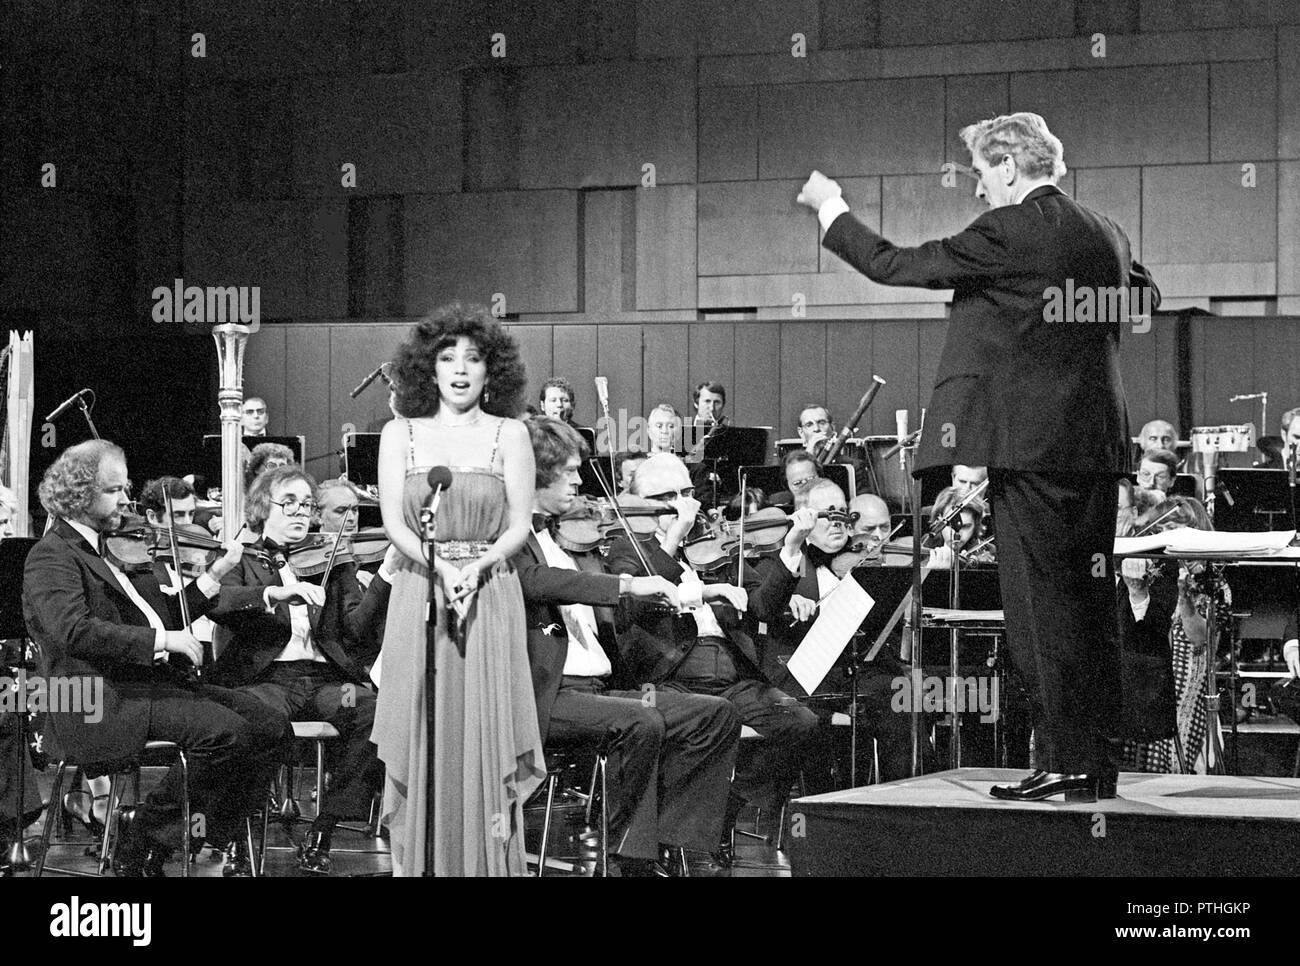 Tonfilm-Erinnerungen, Musiksendung, Deutschland 1980, Mitwirkende: Richard Müller Lempertz leitet das NDR-Orchester, das Julia Migenes begleitet Stock Photo